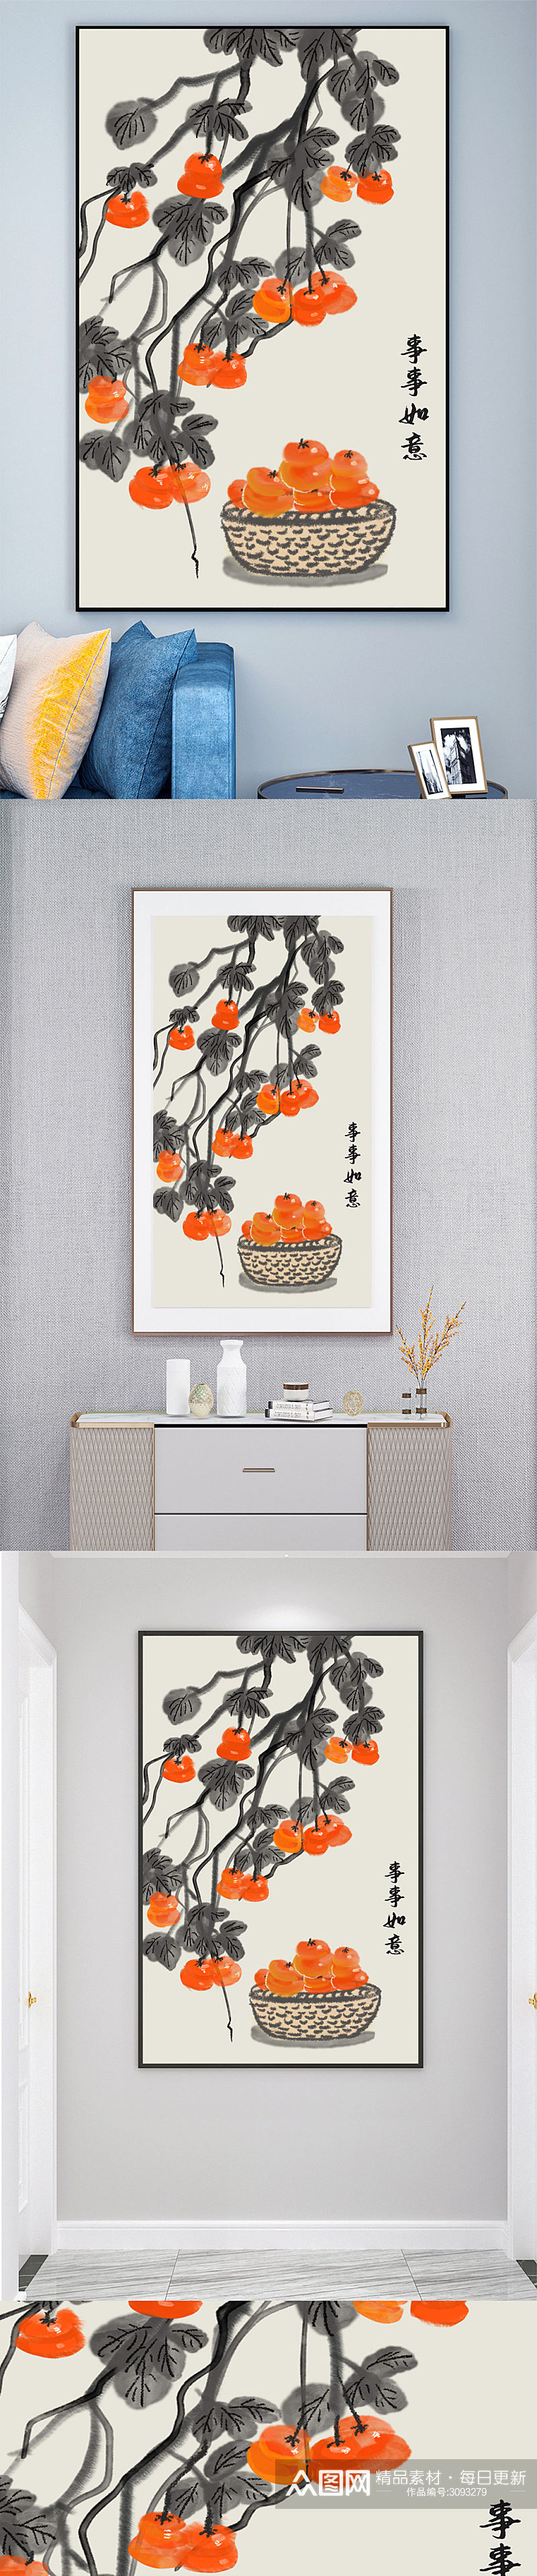 中国式事事如意柿子水果装饰画壁画素材